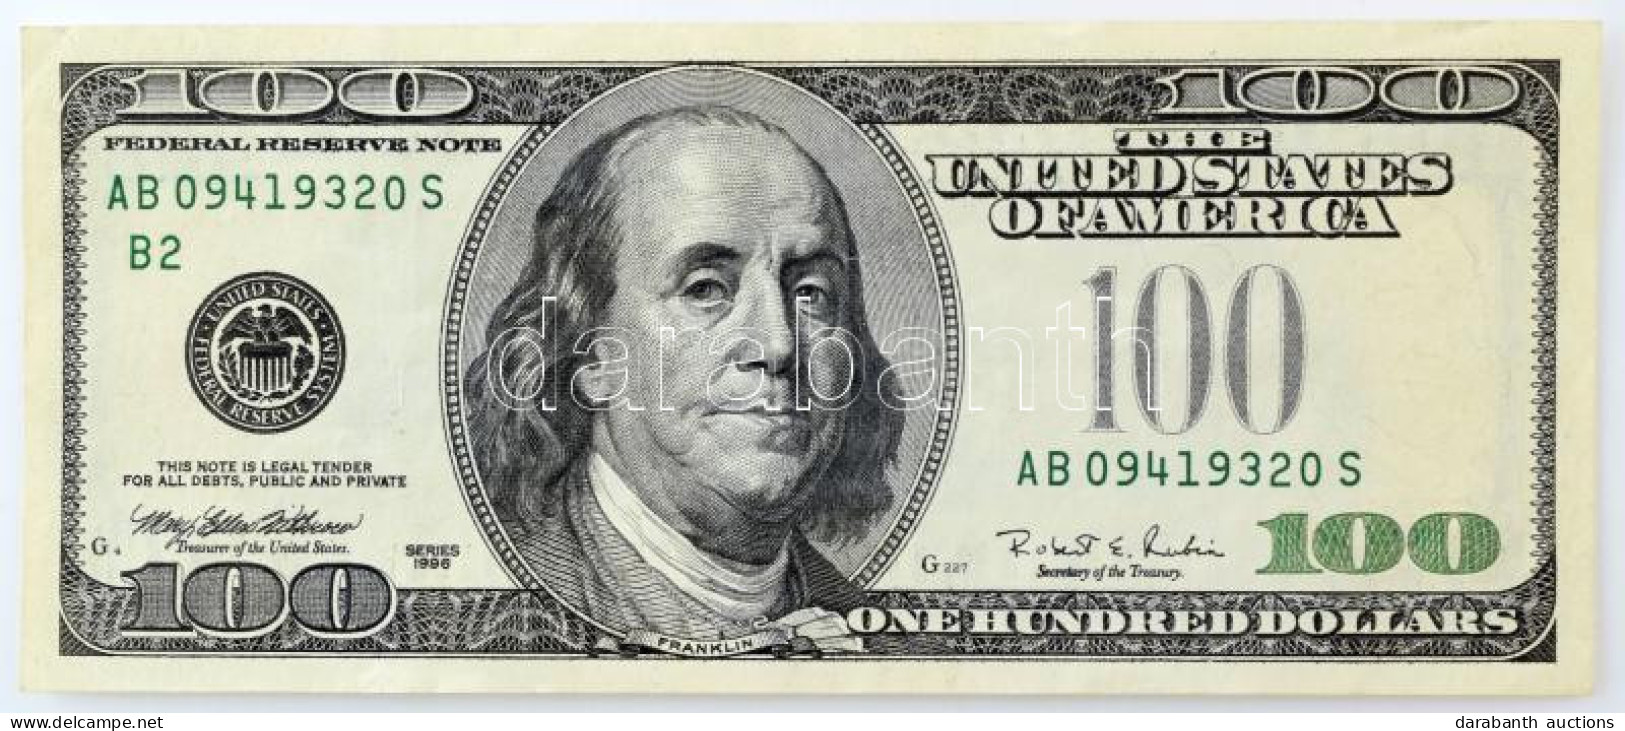 Amerikai Egyesült Államok 1996-1999. (1996) 100$ "Federal States Note" Nyomdahibás Bankjegy Zöld Pecsét Nélkül, "Mary El - Unclassified